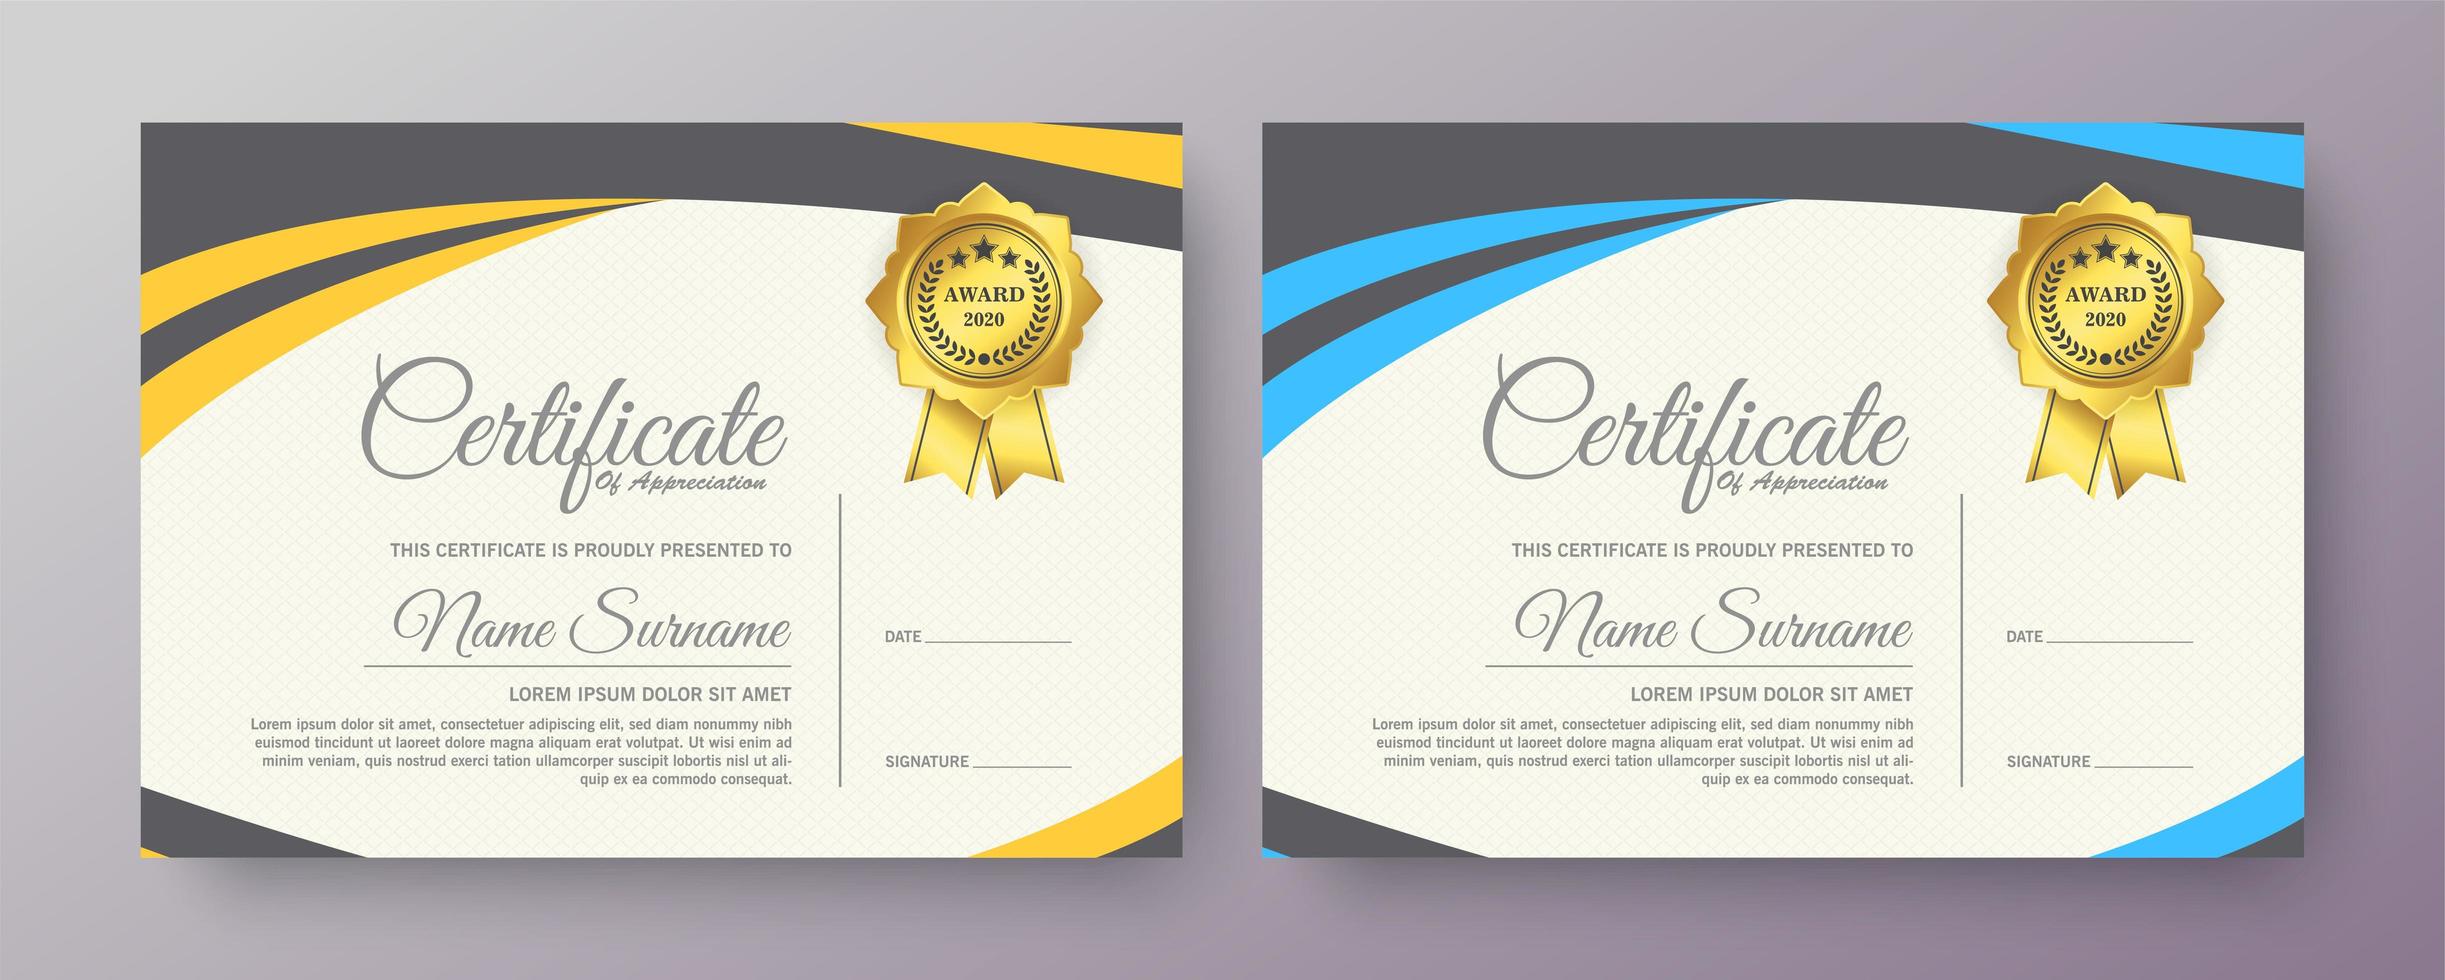 Zertifikatsdesigns mit gelben und blauen Farben vektor